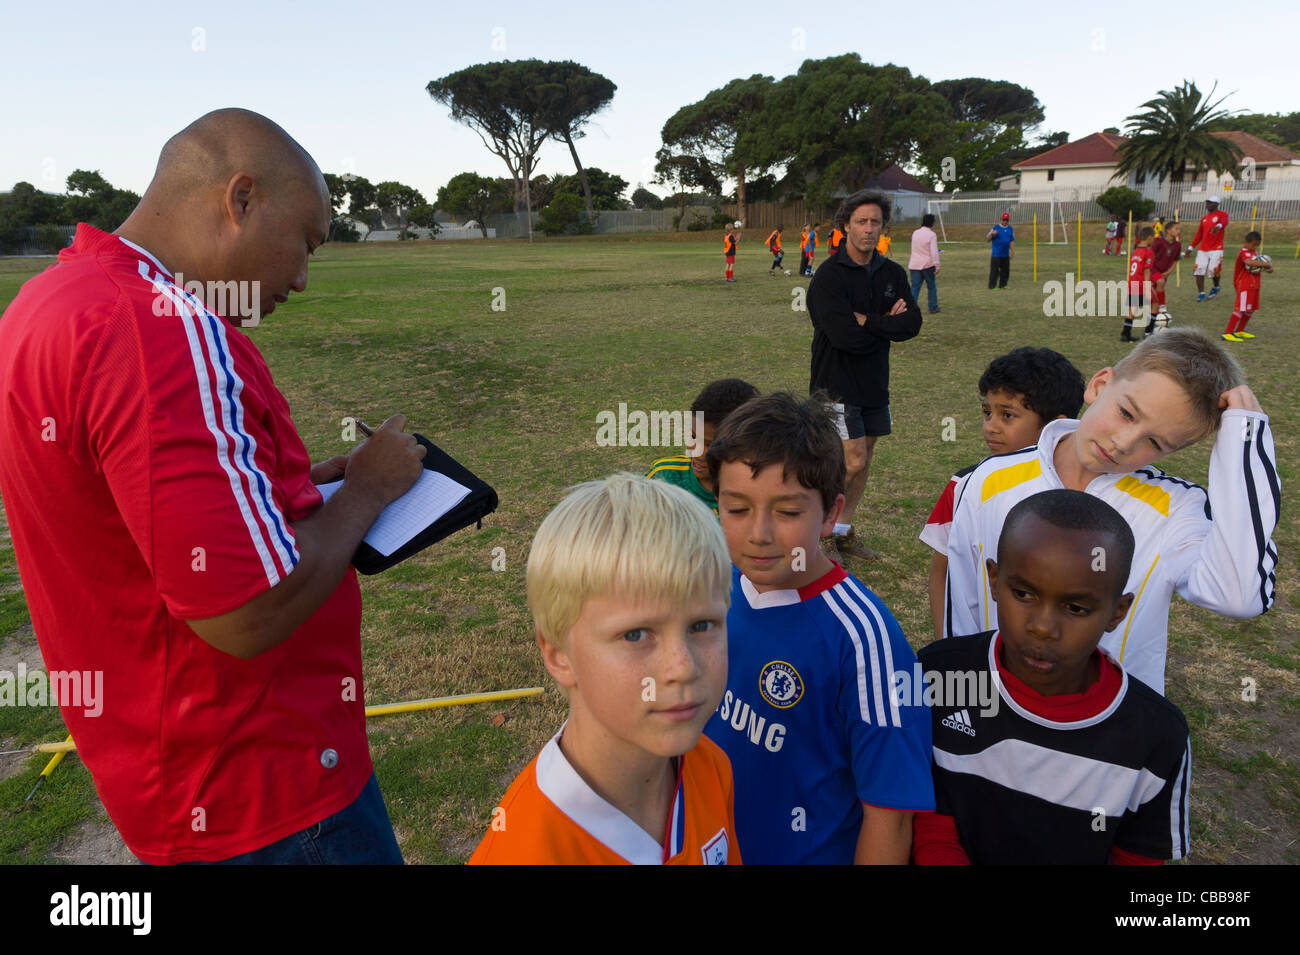 L'entraîneur de football de prendre des notes au cours d'un entraînement, Cape Town Afrique du Sud Banque D'Images